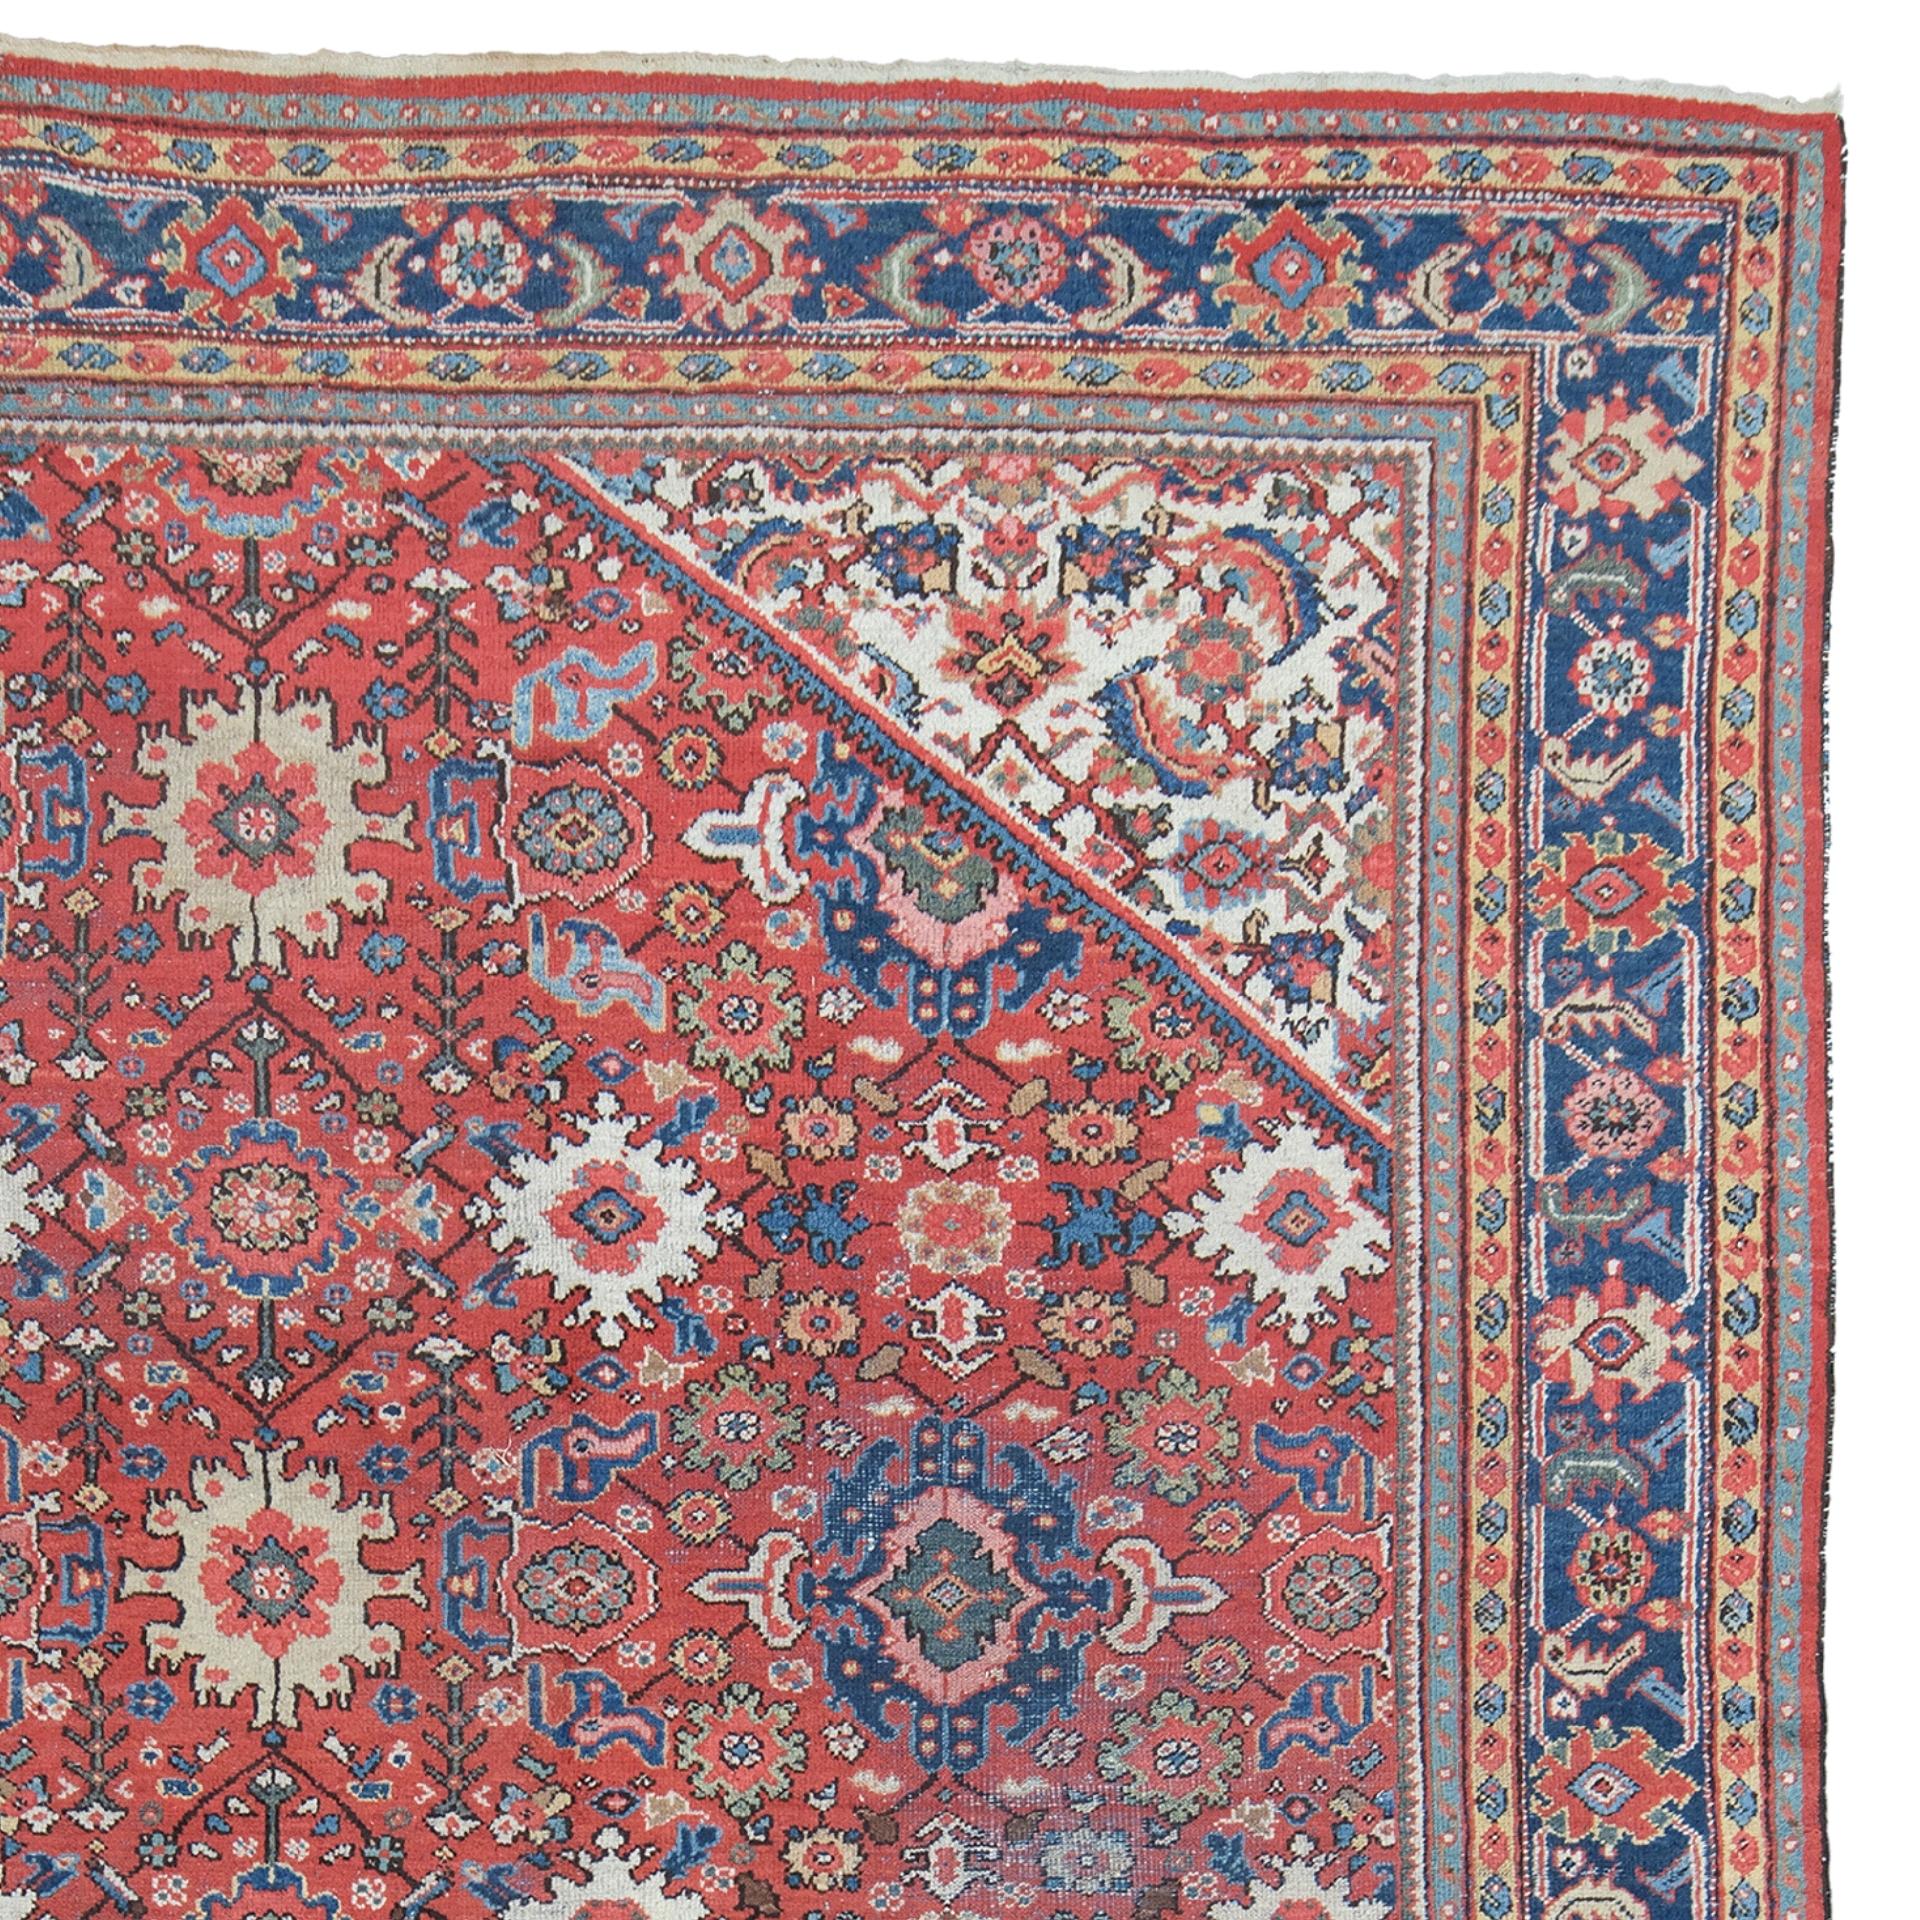 Antique Mahal Carpet - 19th Century Antique Mahal Carpet, Antique Rug In Good Condition For Sale In Sultanahmet, 34